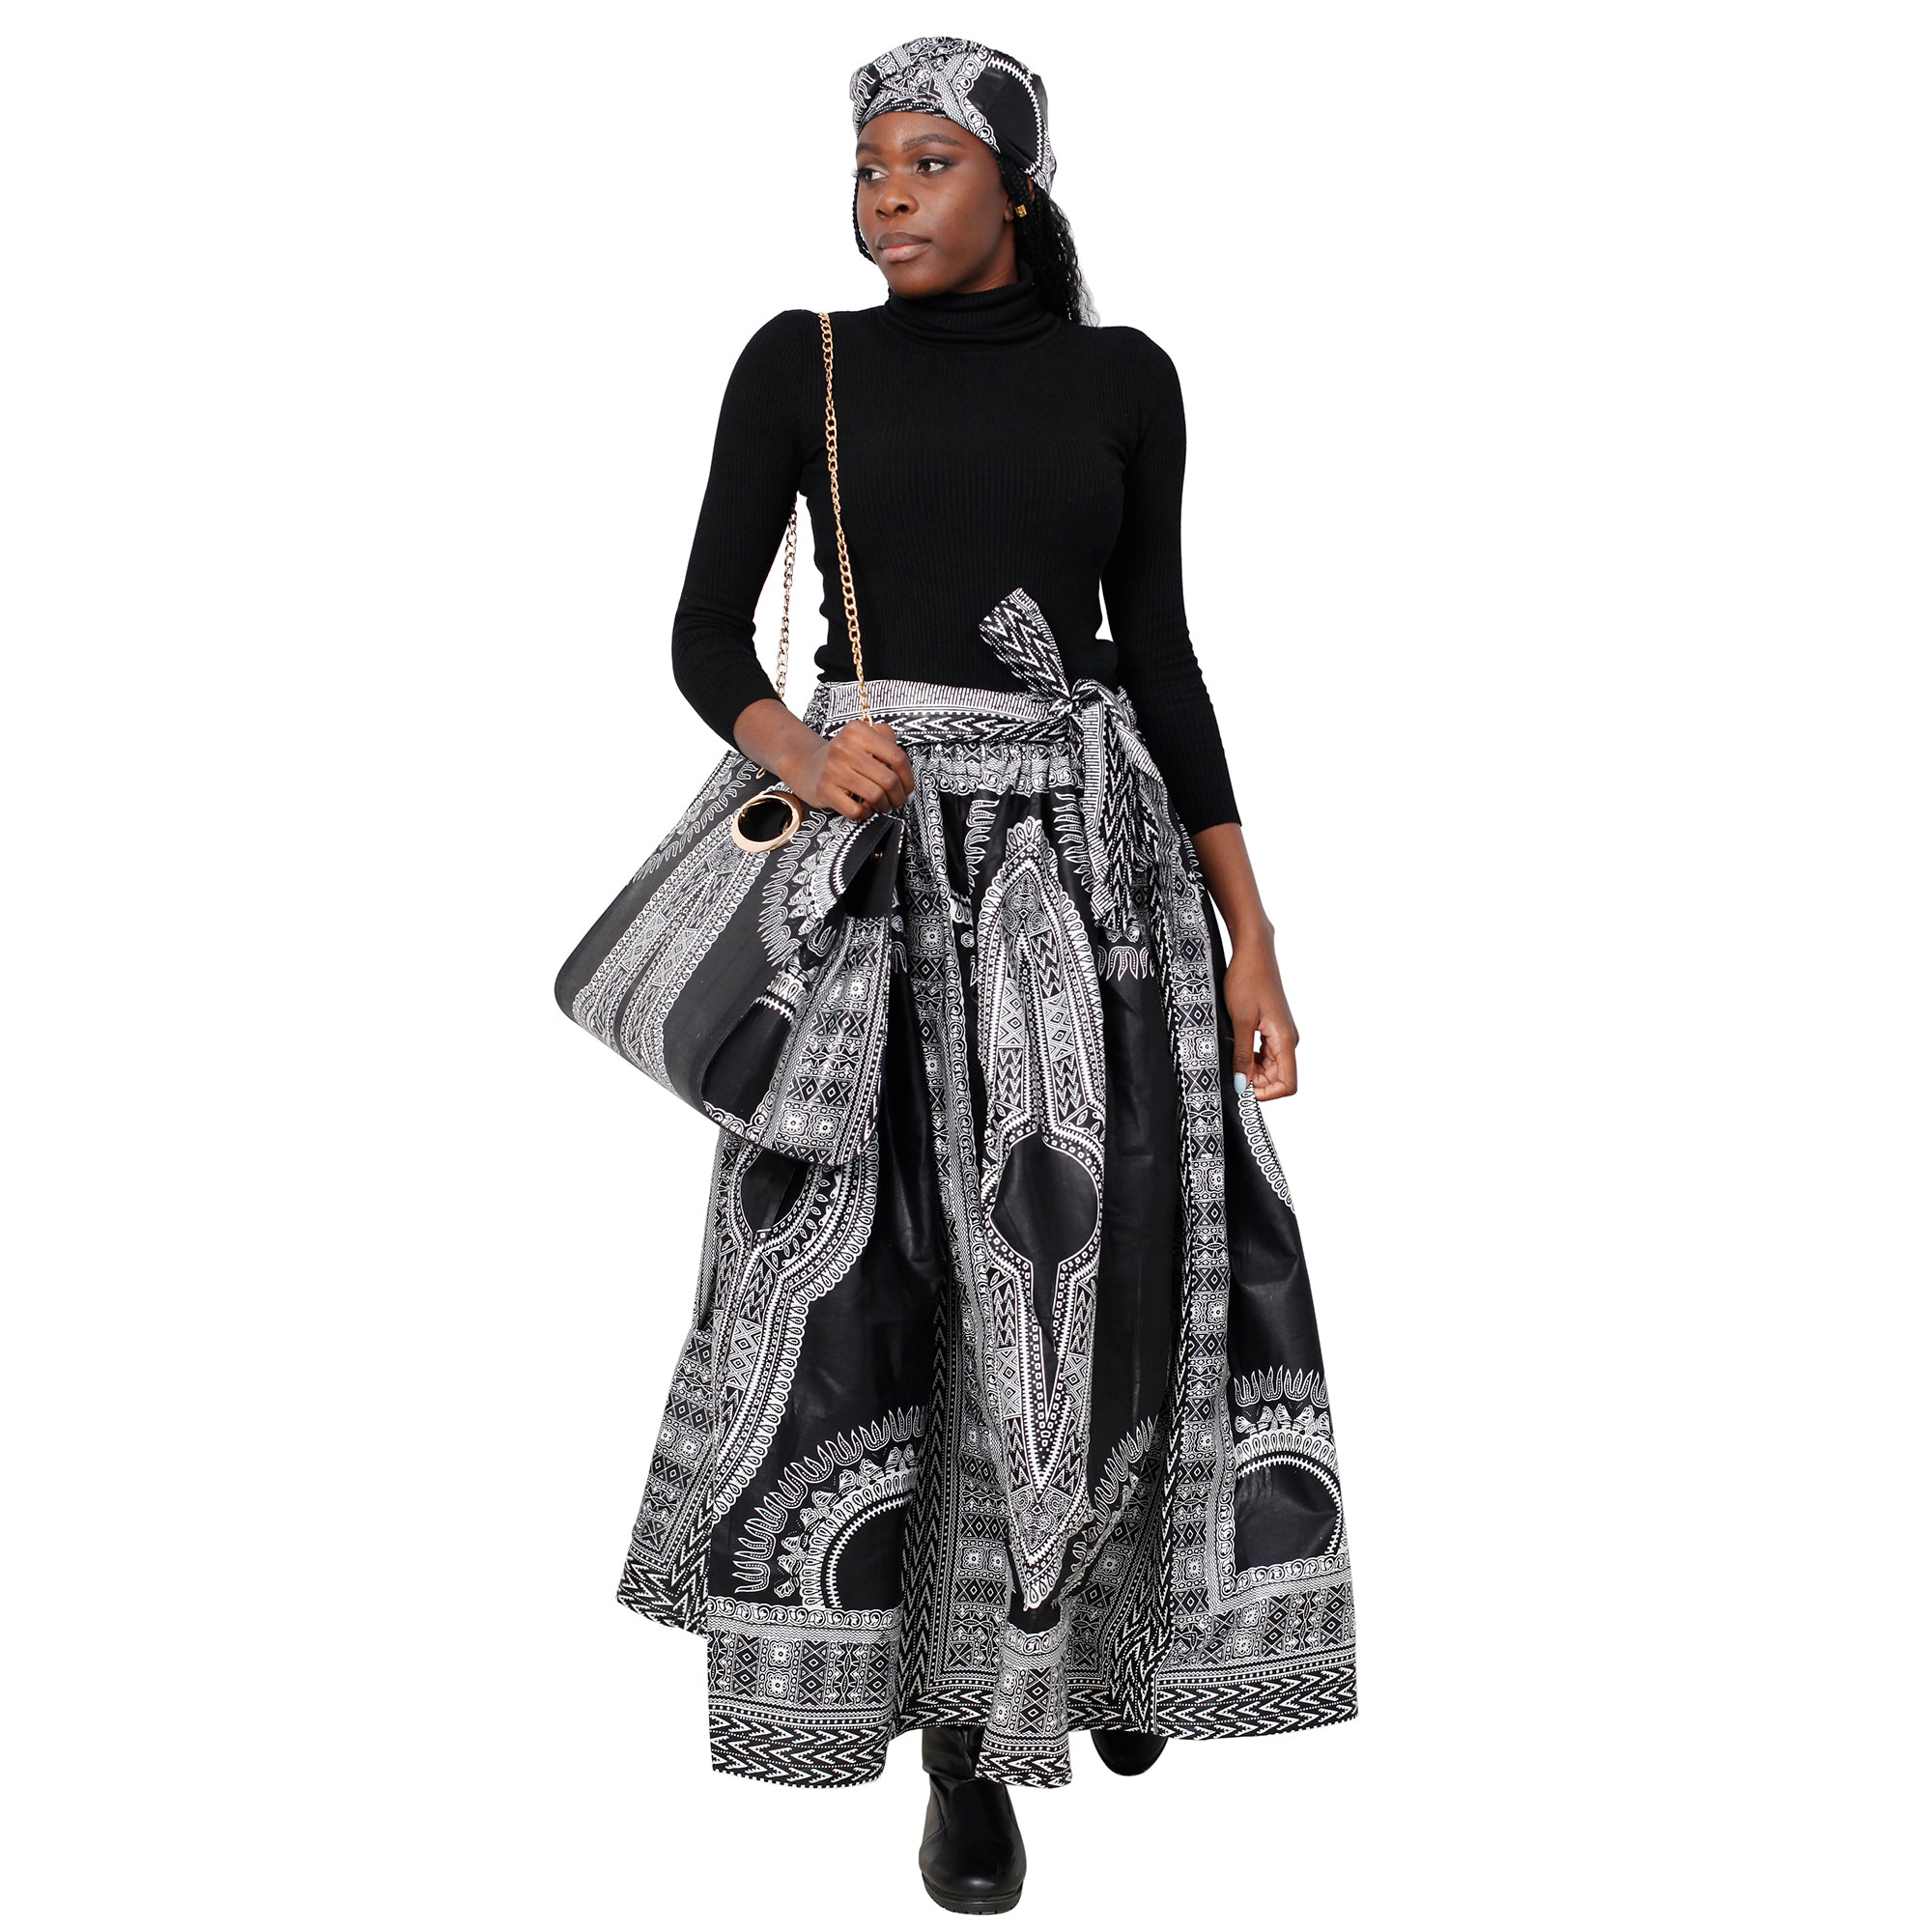 Women's Dashiki Skirt with Matching Handbag -- FI-38 With Bag